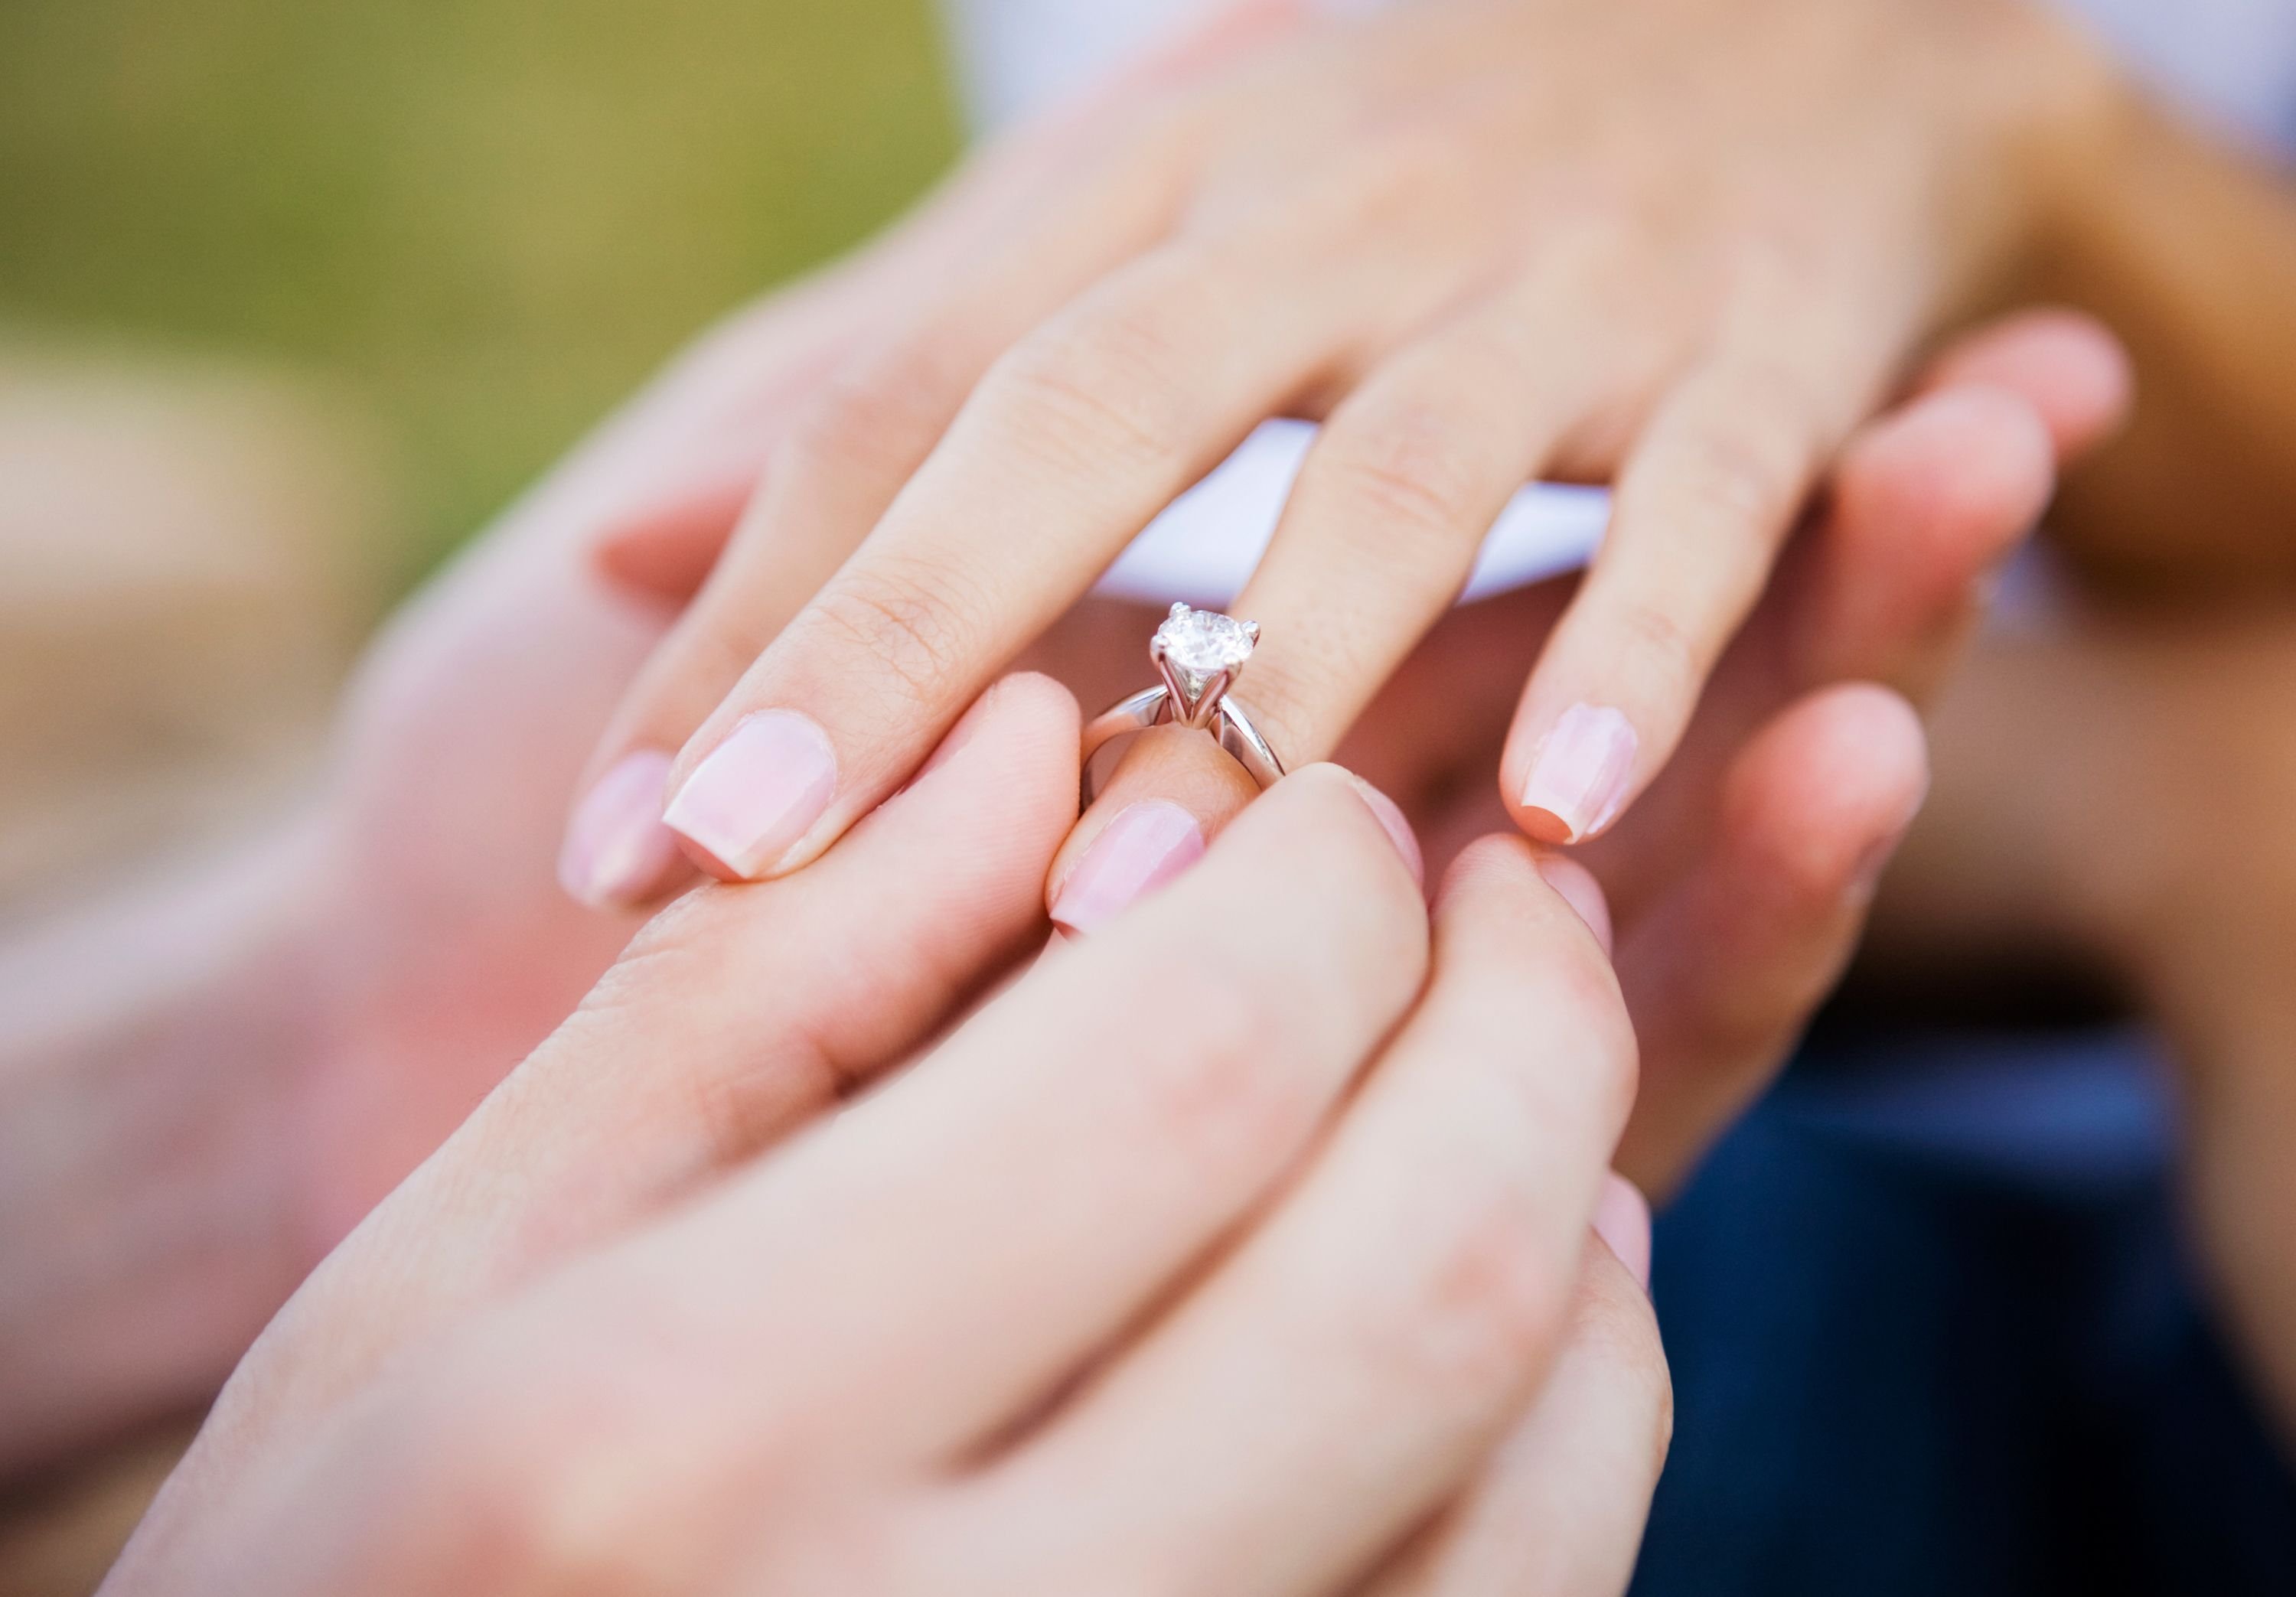 Предложения замужества. Надевает кольцо. Обручальные и помолвочные кольца. Предложение руки и сердца. Обручальное кольцо на пальце.